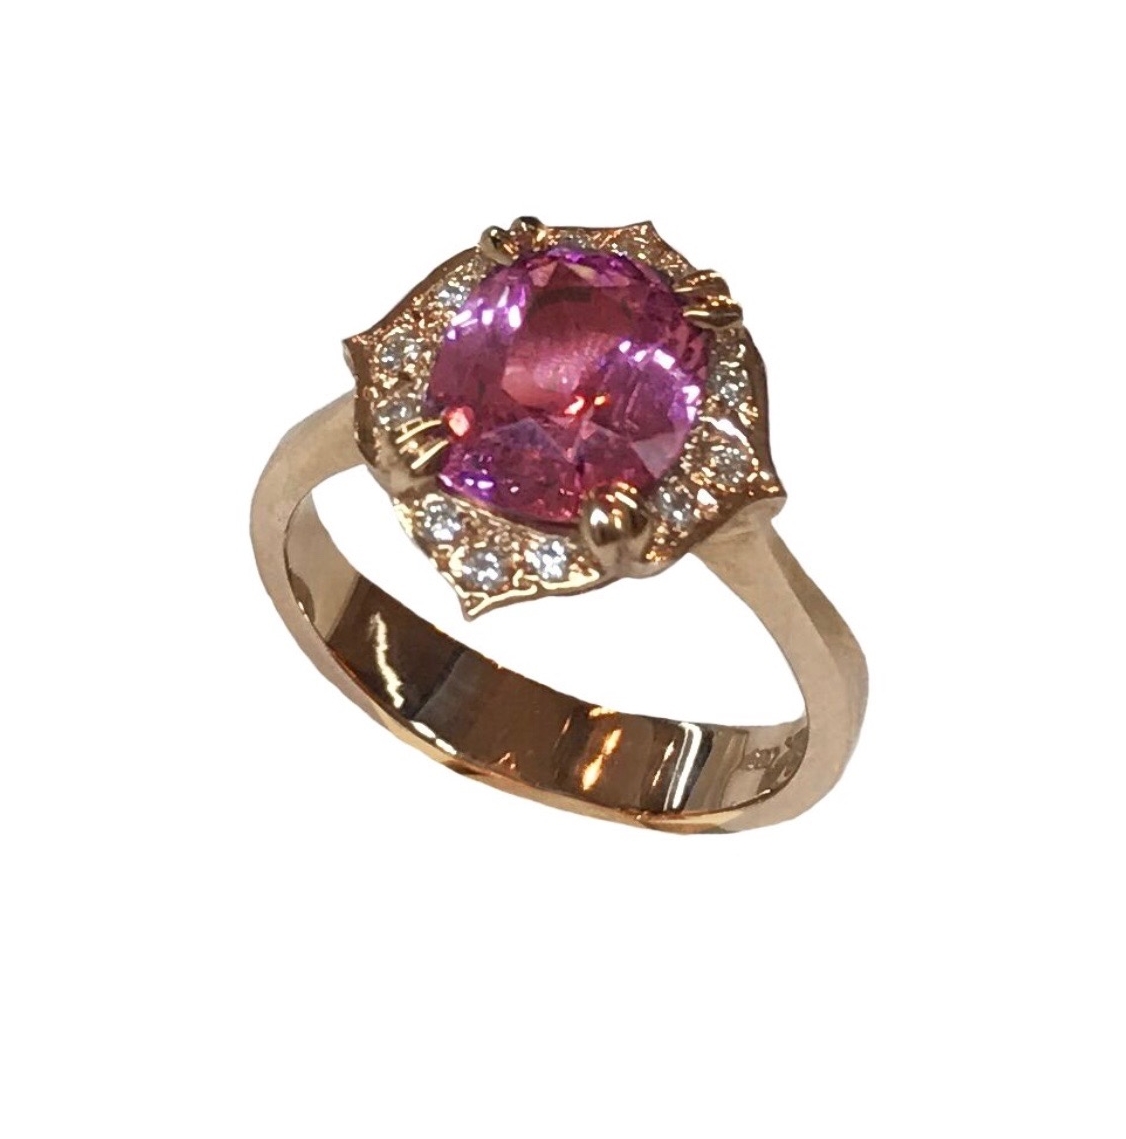 Malaia Garnet Cushion Cut Ring with Diamonds in Rose Gold.jpeg